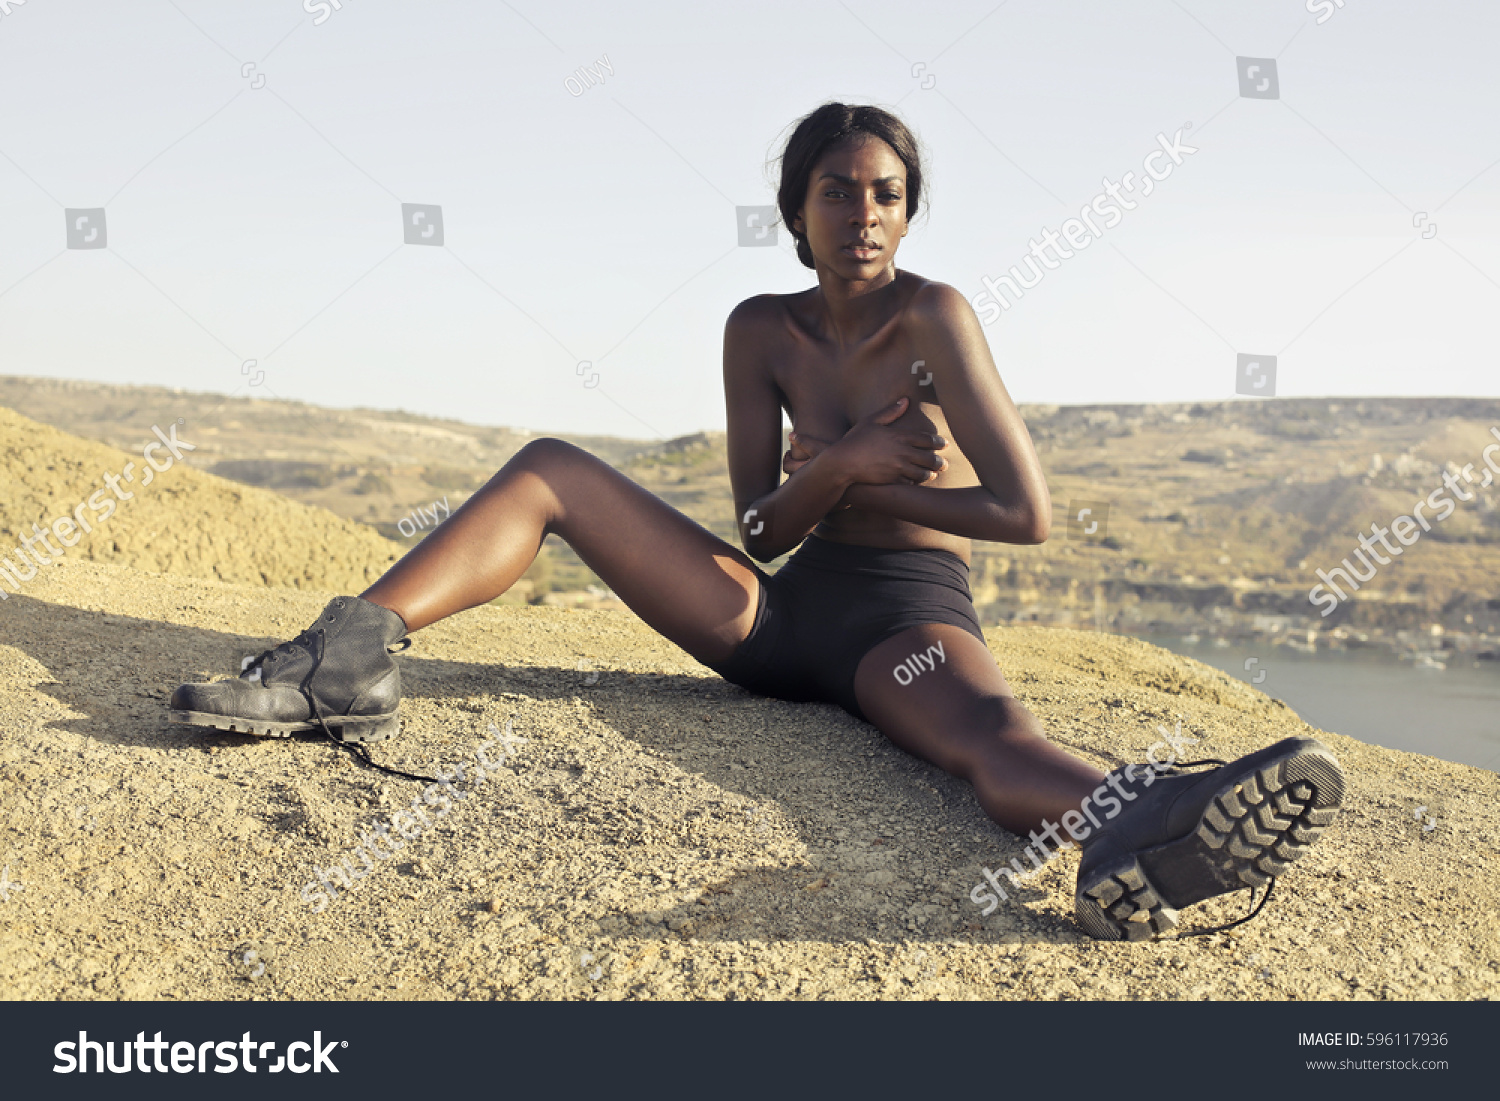 Pics Of Naked Black Women